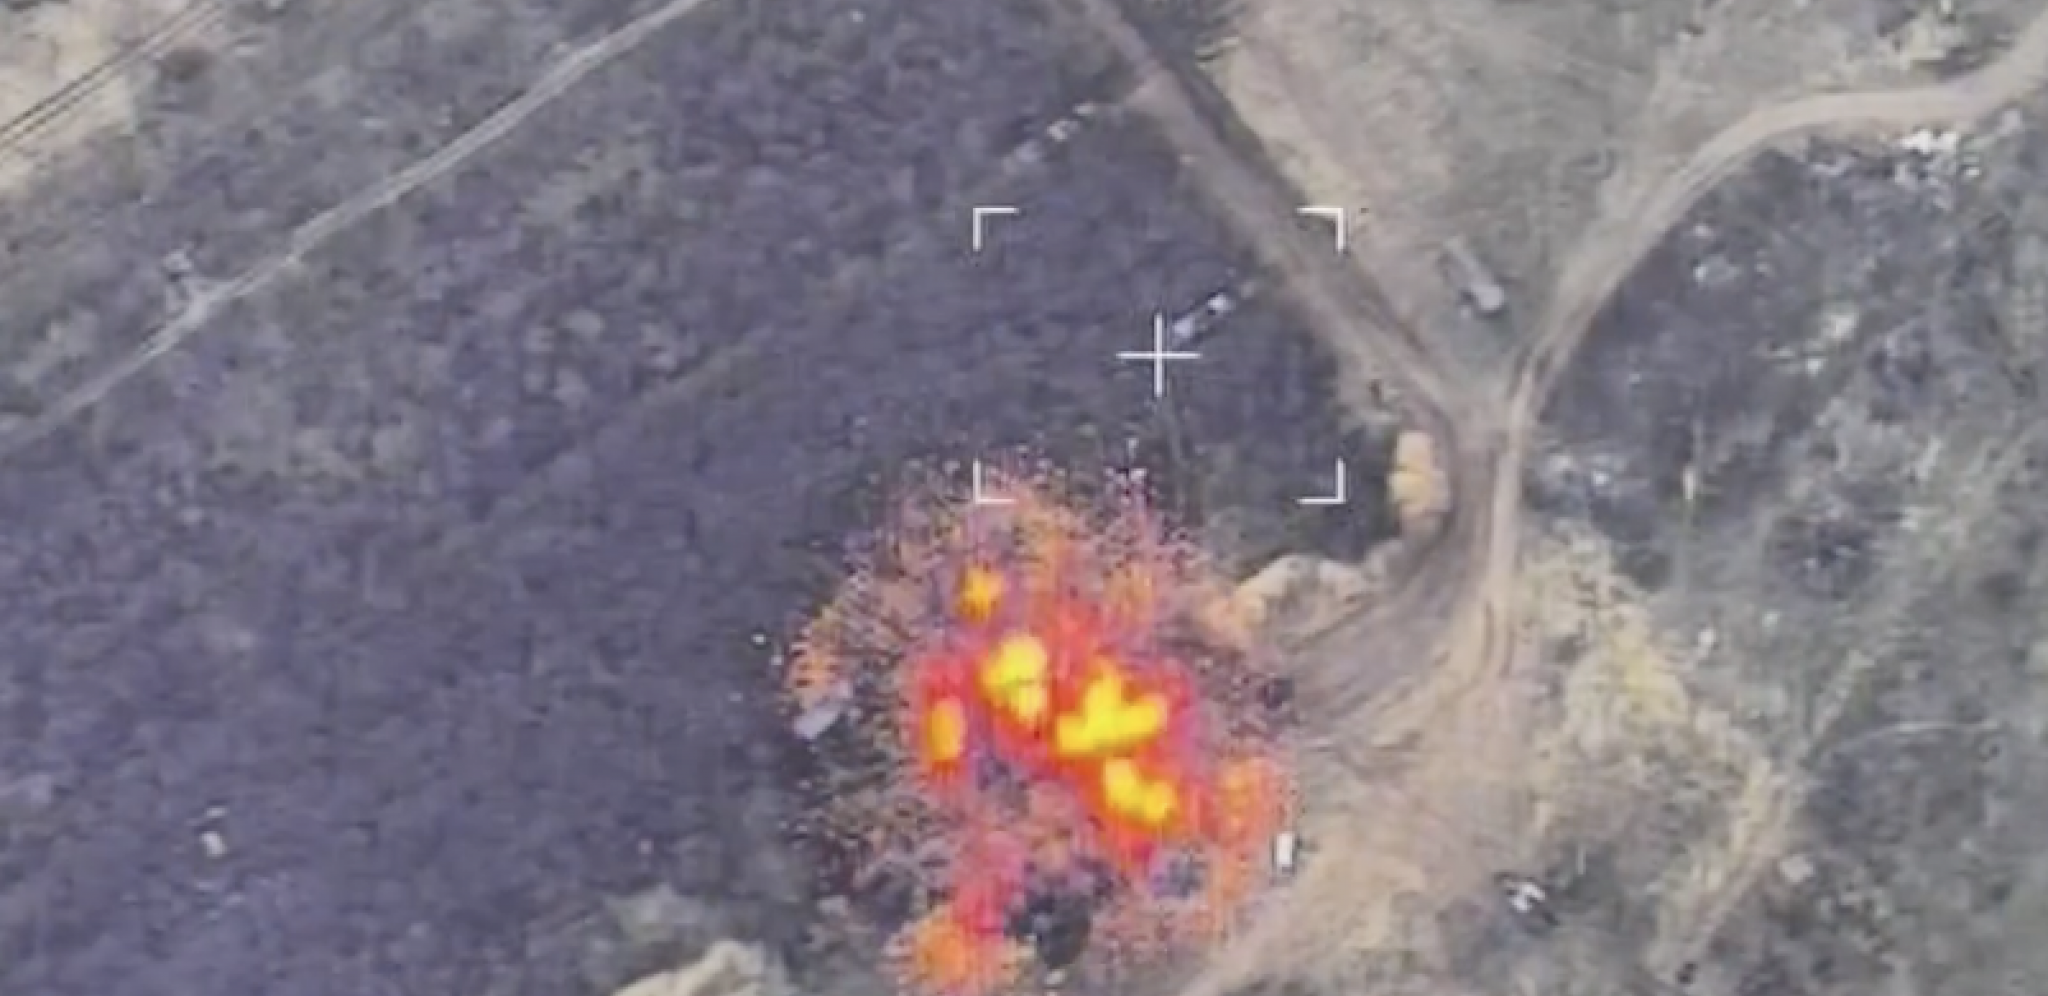 NOVI SNIMAK PRECIZNOG RAKETNOG UDARA Rusi dronom uništili najmoćniju artiljeriju Ukrajinaca (VIDEO)